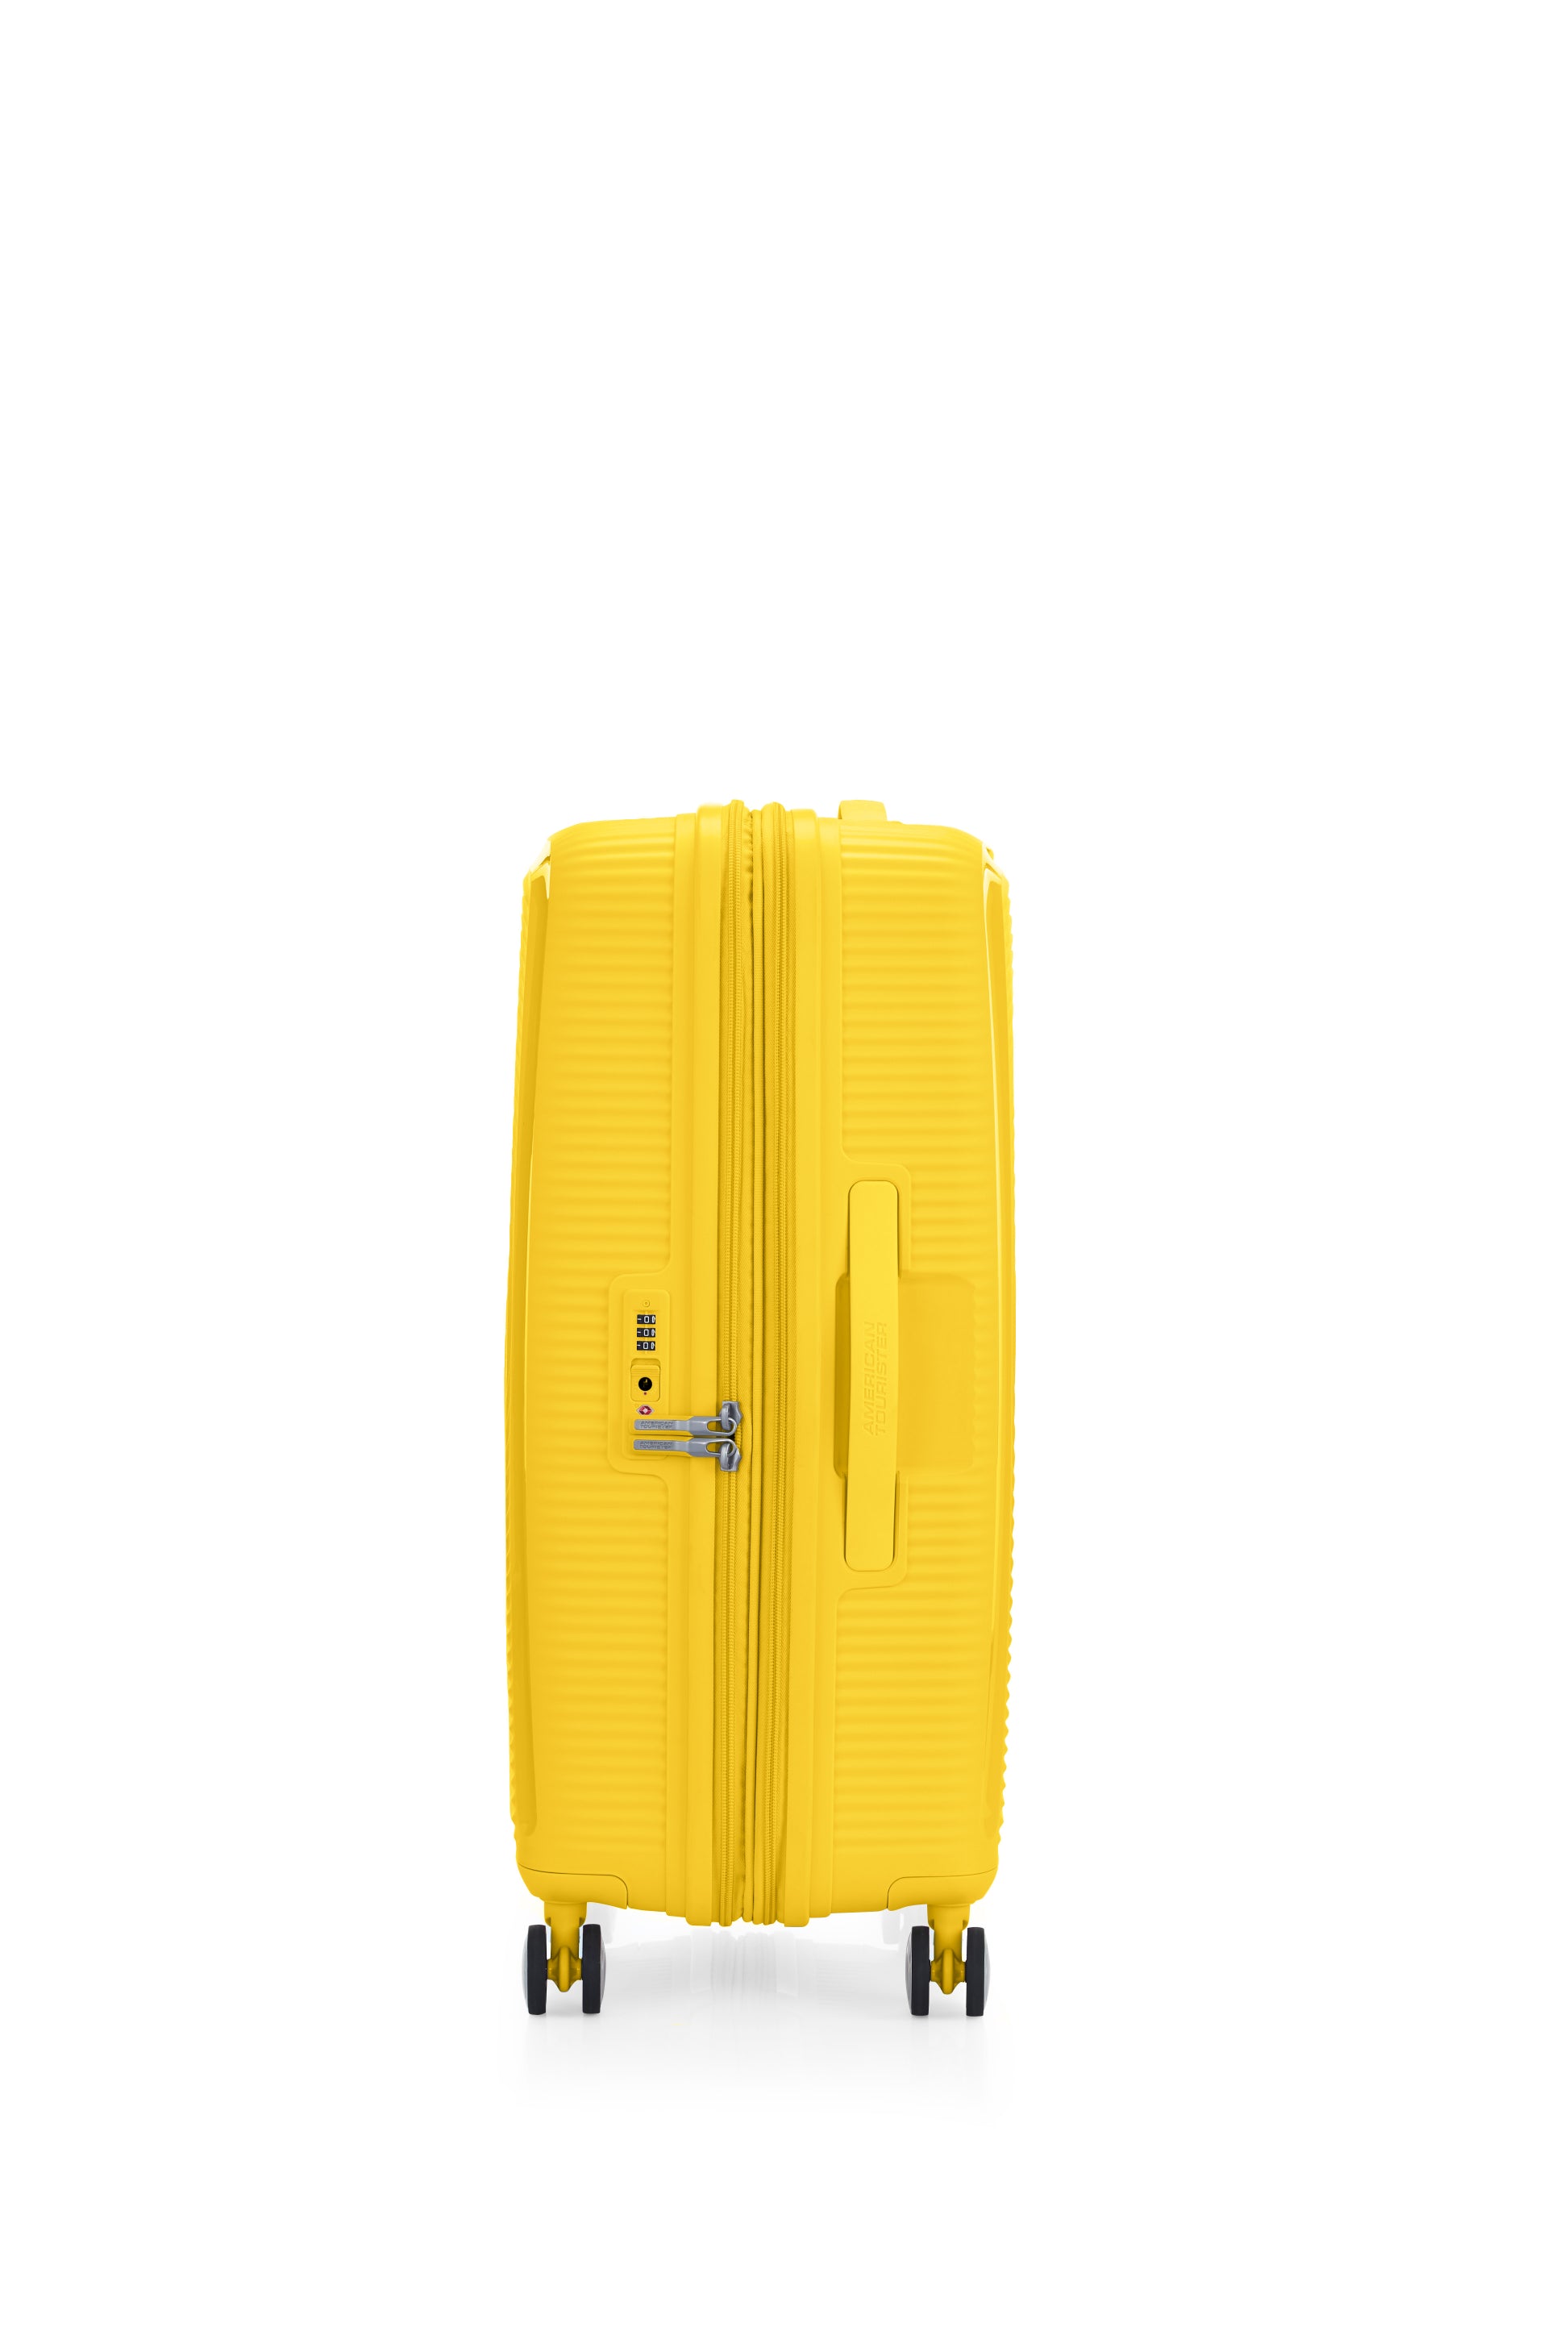 American Tourister - Curio 2.0 69cm Medium Suitcase - Golden Yellow-1